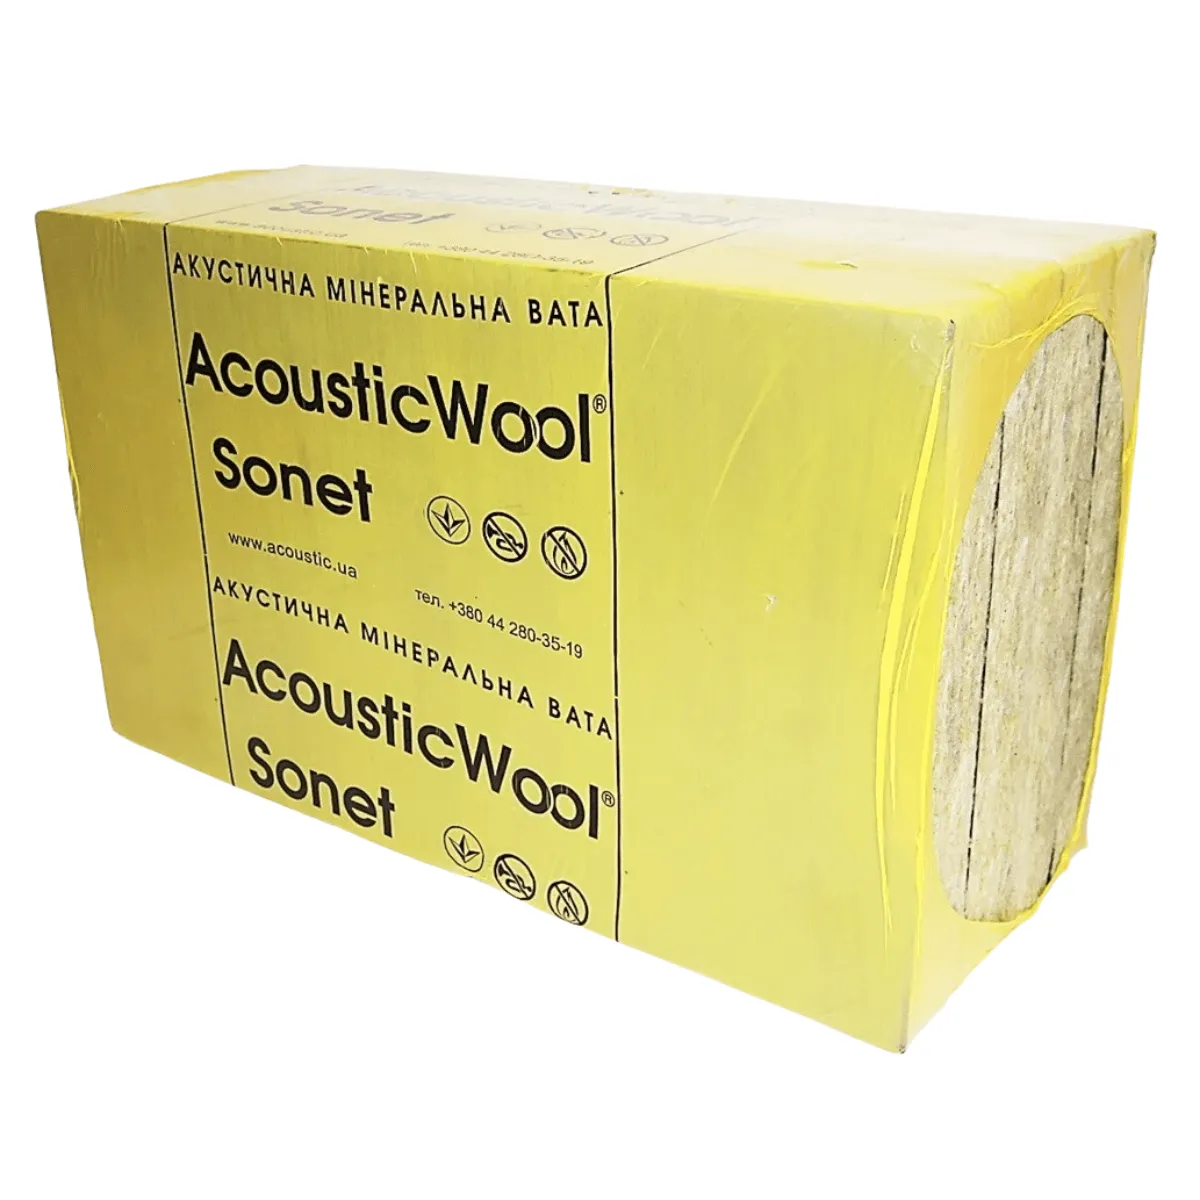 Акустическая минеральная вата AcousticWool Sonet 48